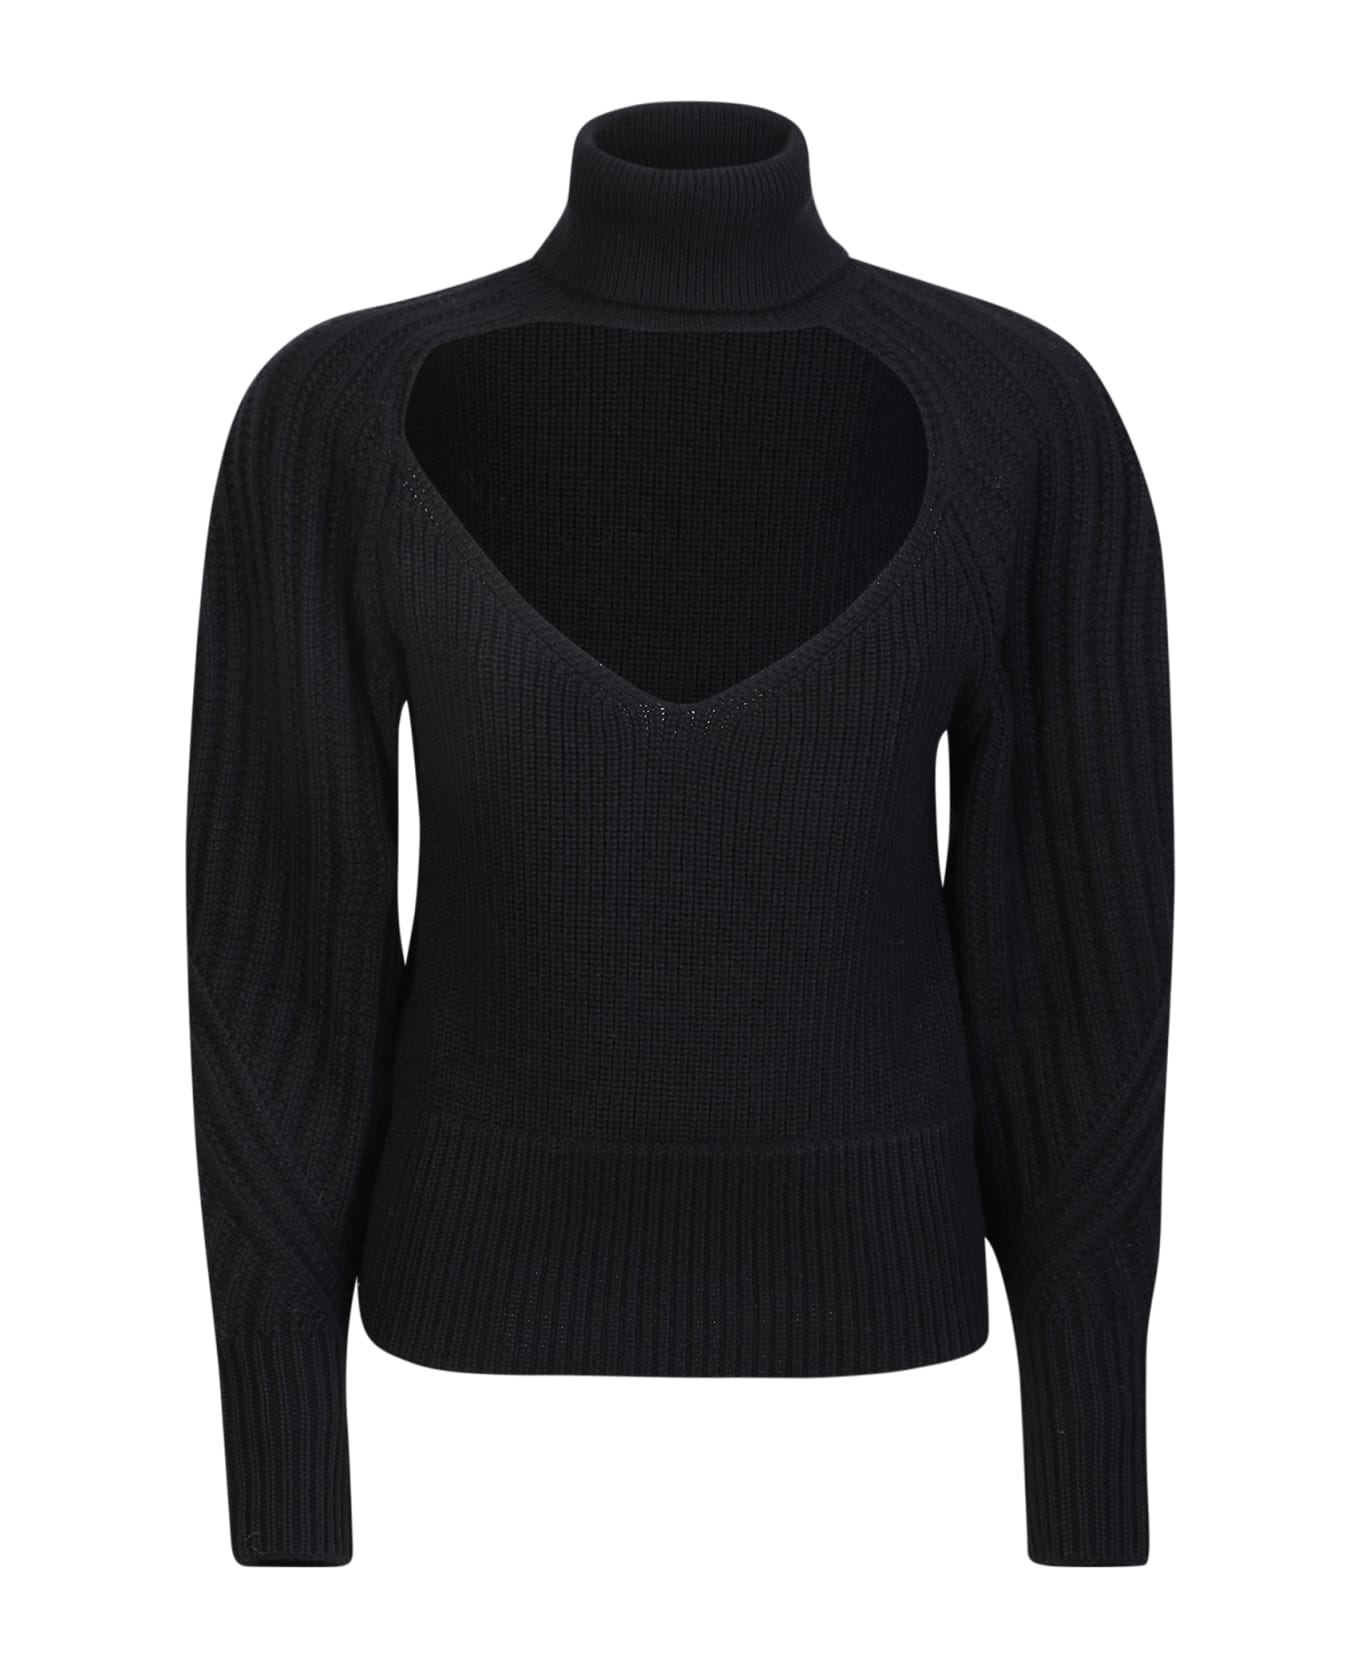 IRO Heart Neckline Wool Sweater In Black - Black